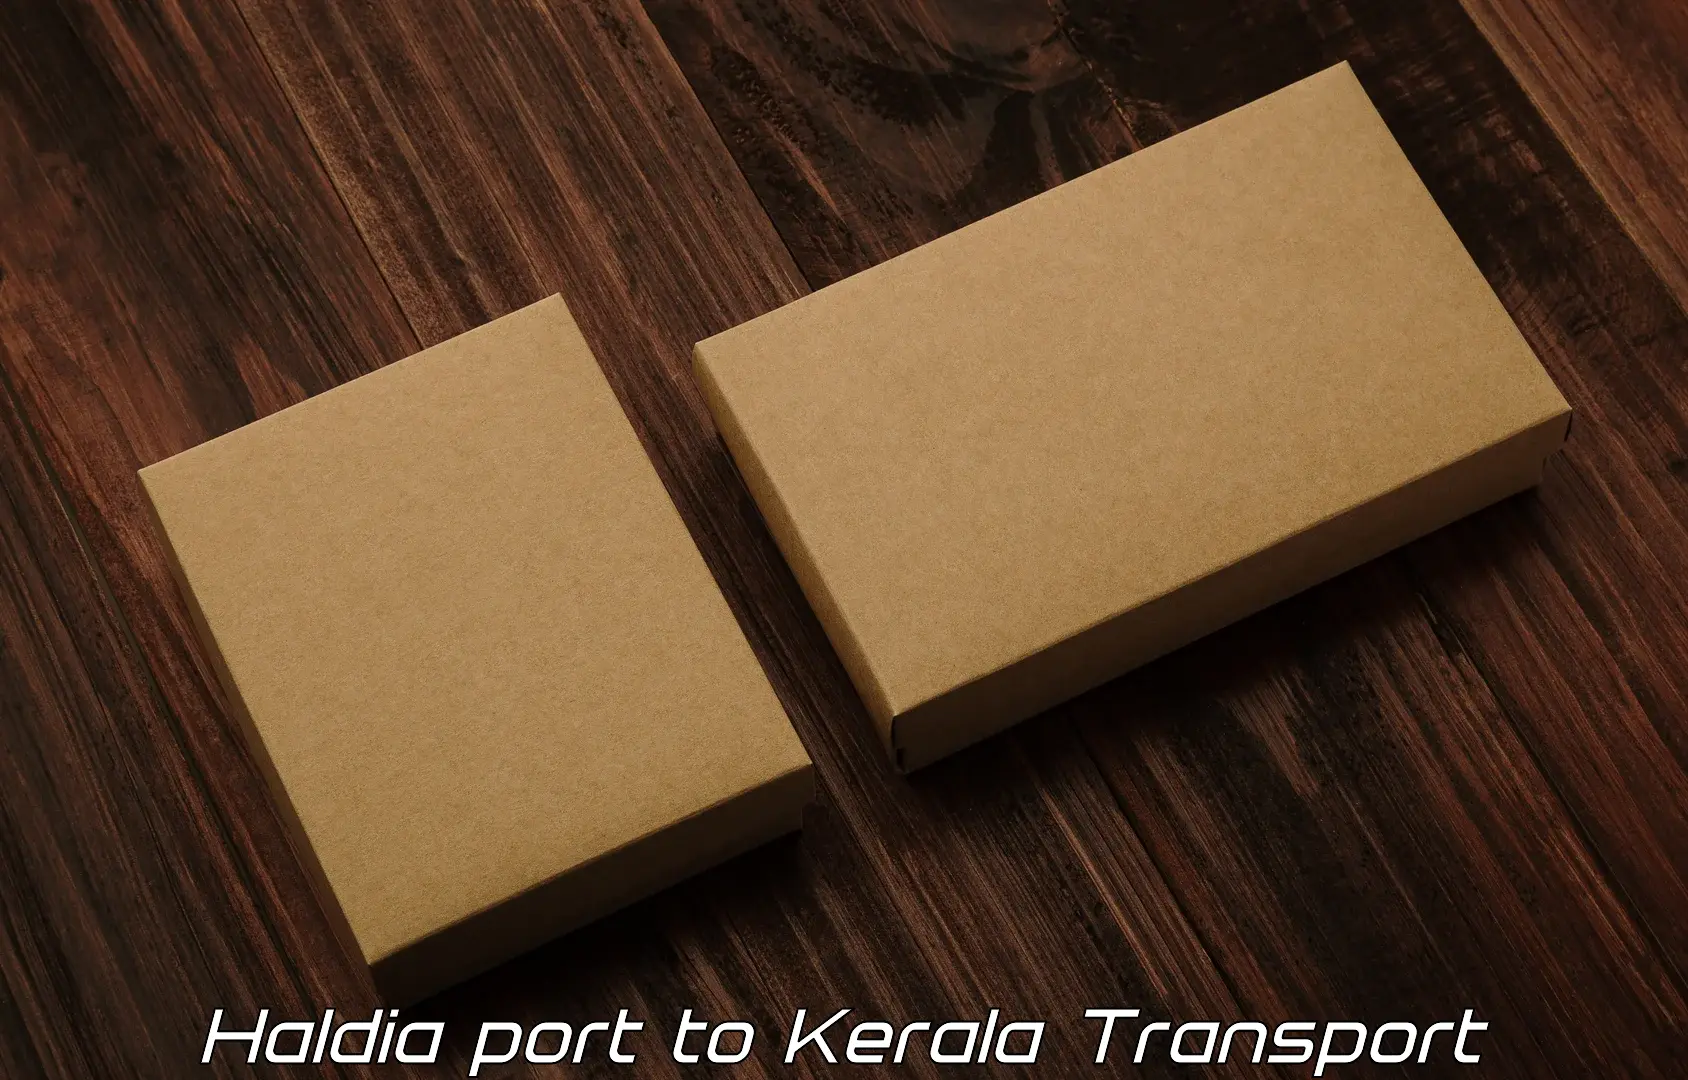 Bike transport service Haldia port to Kerala